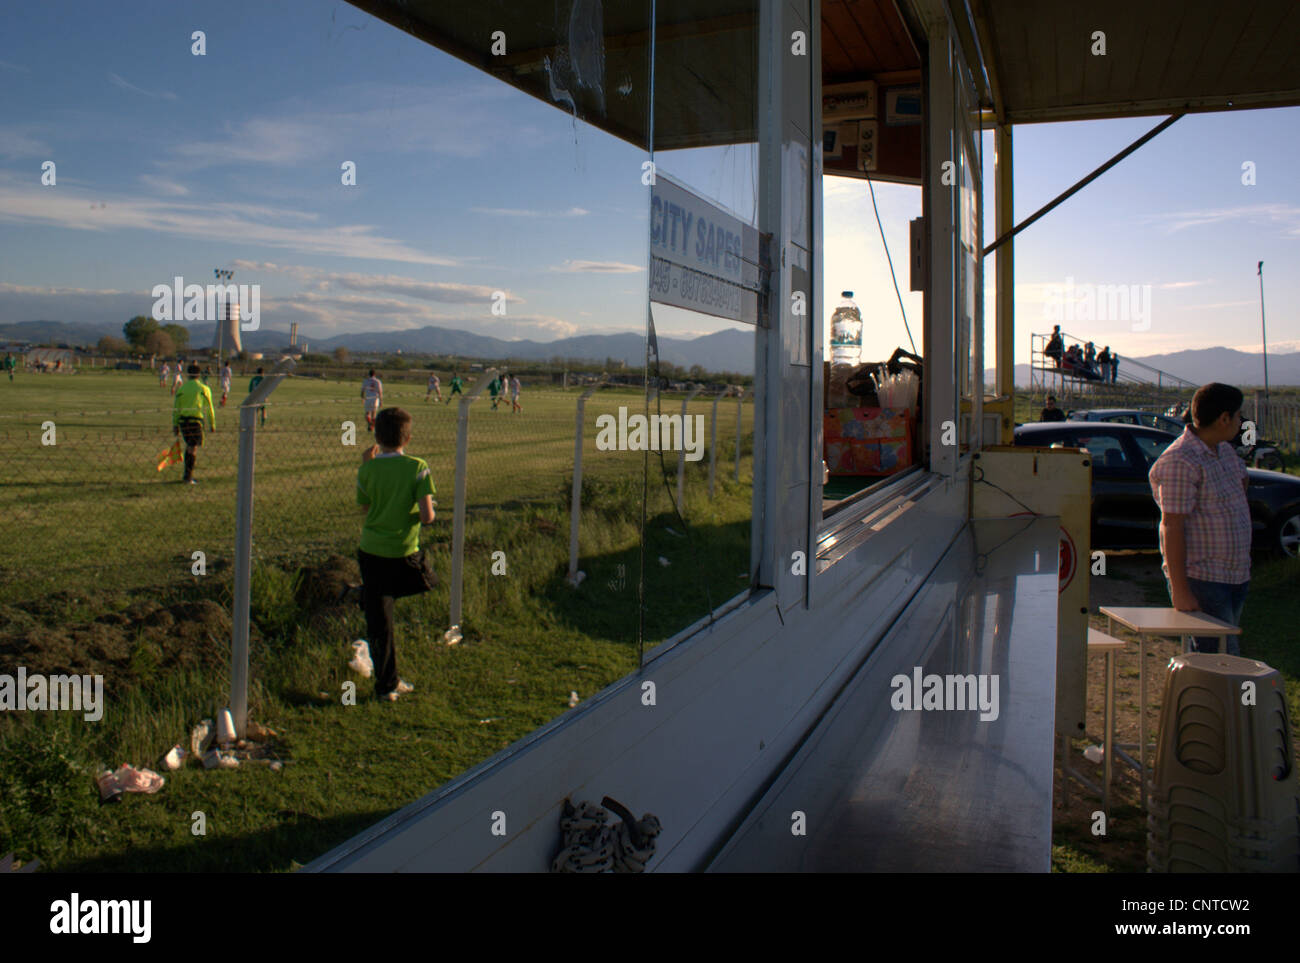 Un match de football amateur reflétée sur un hot-dog van;'s miroir, avec des ventilateurs dans la distance de regarder le match. La Thrace, la Grèce. Banque D'Images